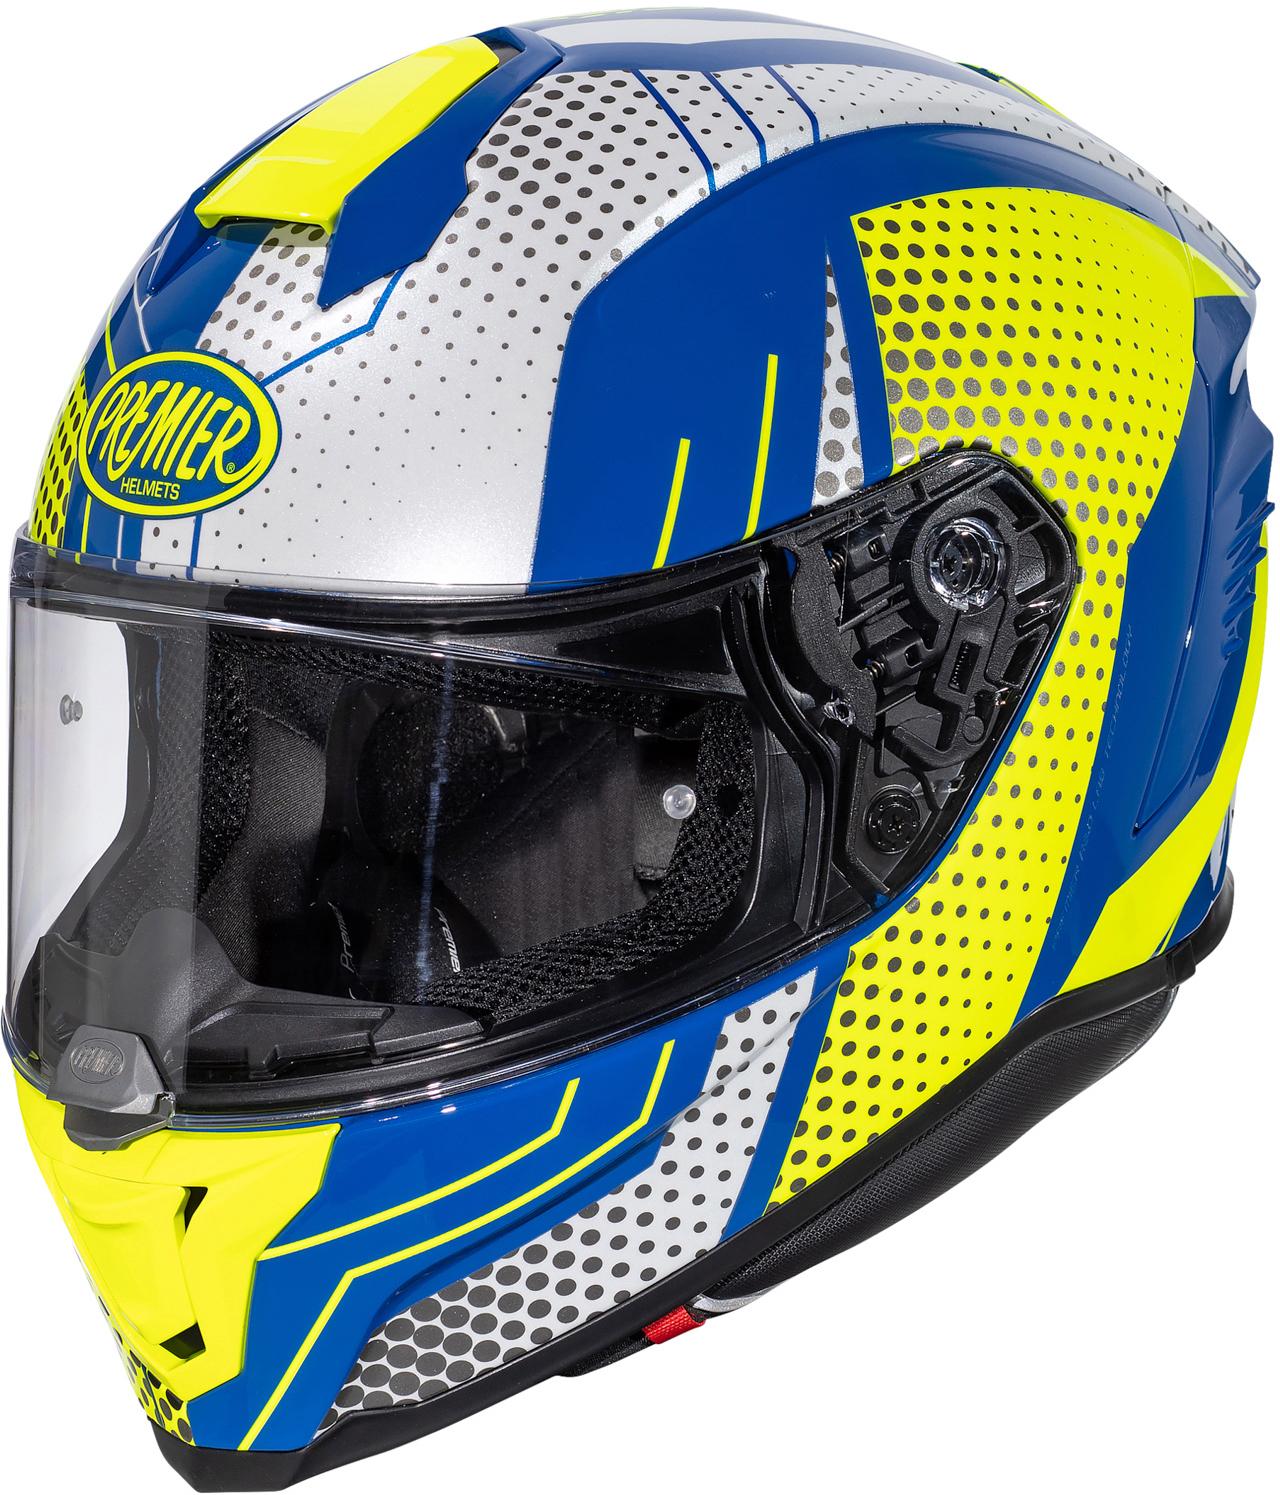 Premier Hyper Bp Full Face Motorcycle Helmet - White/Blue, L